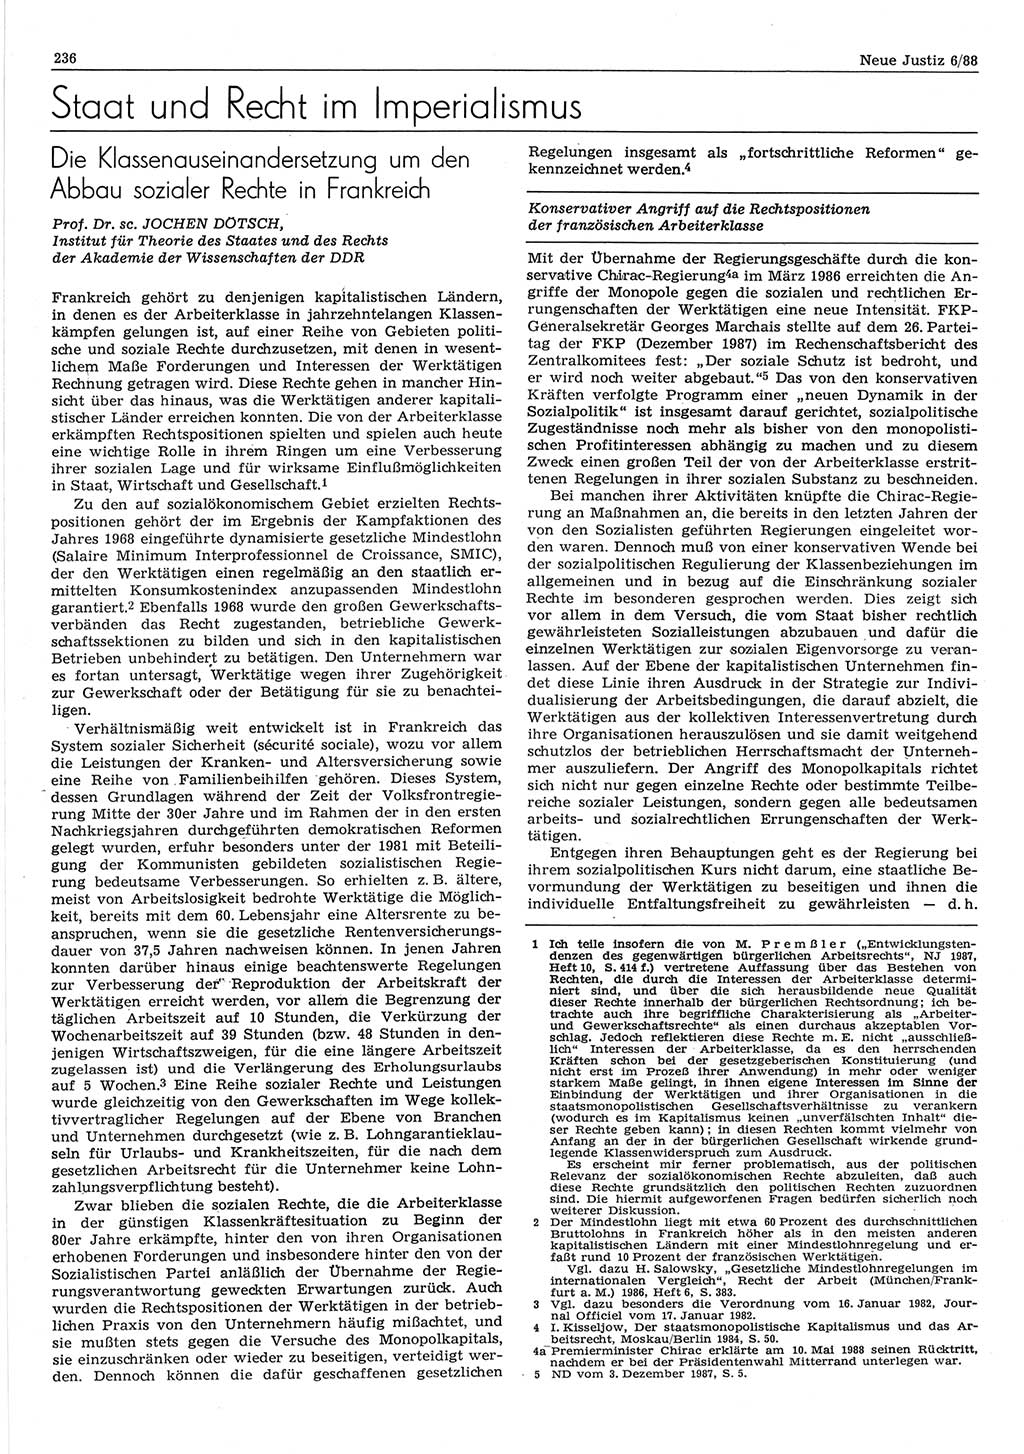 Neue Justiz (NJ), Zeitschrift für sozialistisches Recht und Gesetzlichkeit [Deutsche Demokratische Republik (DDR)], 42. Jahrgang 1988, Seite 236 (NJ DDR 1988, S. 236)